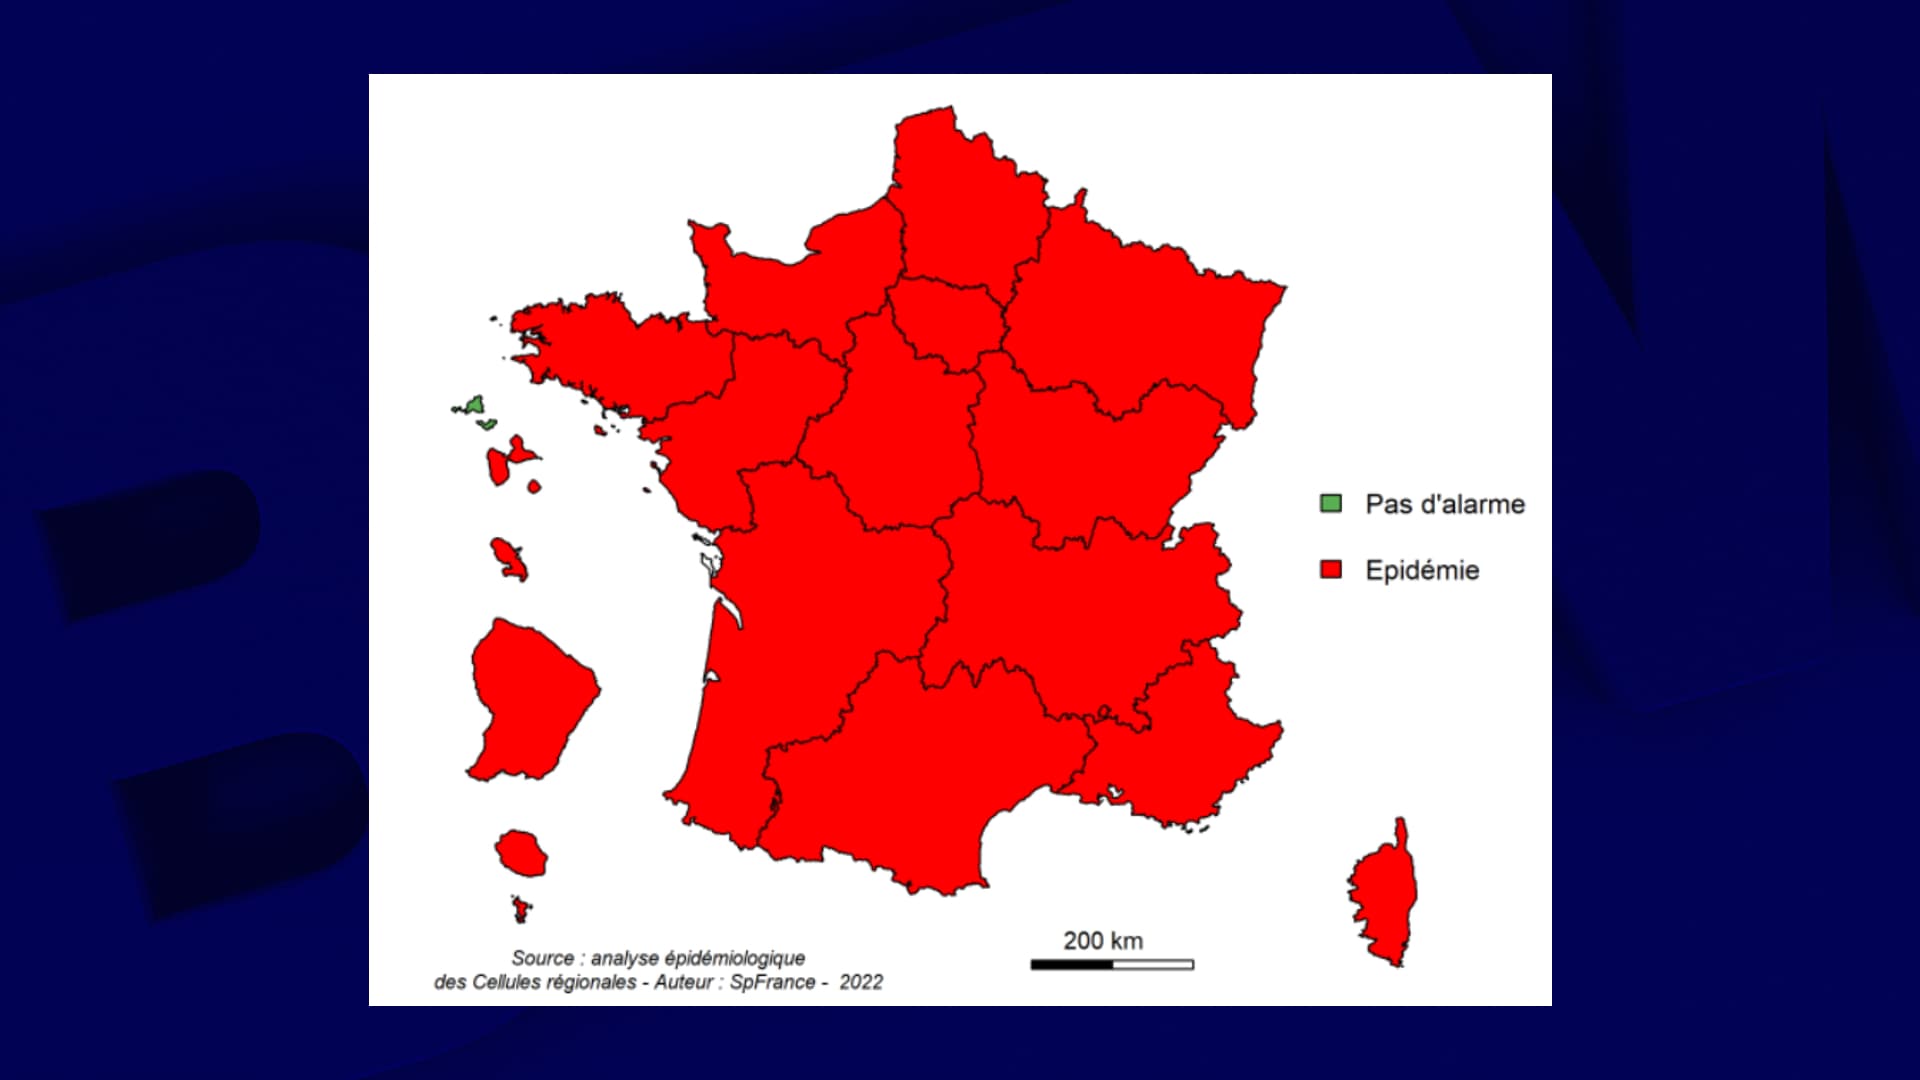 Die Epidemie schreitet in Frankreich weiter voran, wo die Zahl der Krankenhauseinweisungen stark zugenommen hat